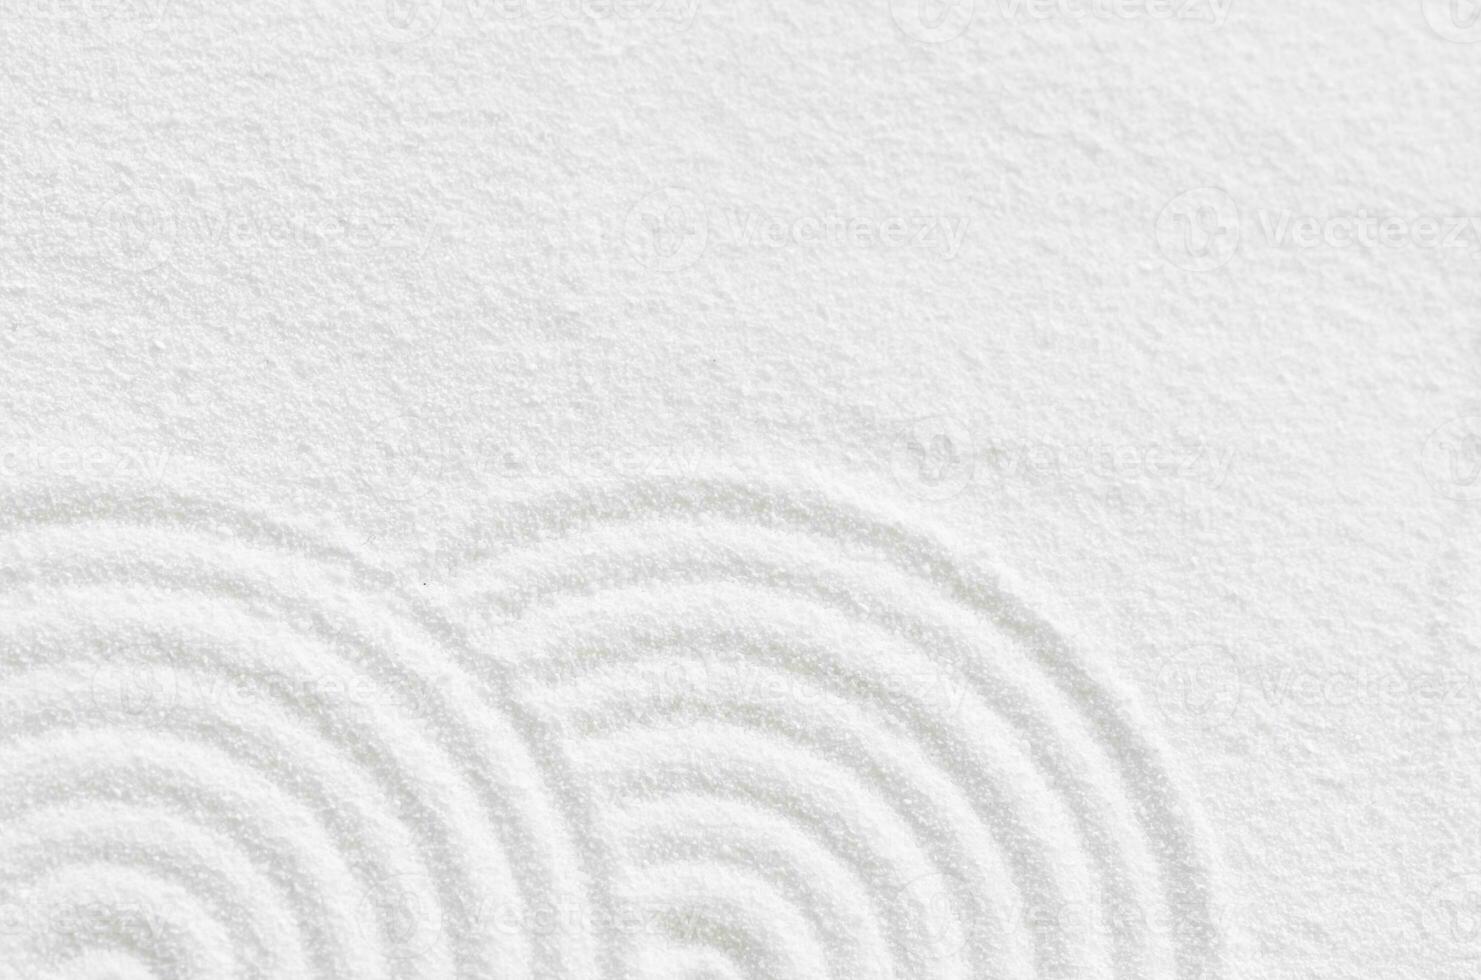 Sand Textur mit einfach spirituell Muster, japanisch Zen Garten mit konzentrisch Kreise und parallel Linien auf Weiß sandig Oberfläche hintergrund,harmonie,meditation,zen mögen Konzept foto